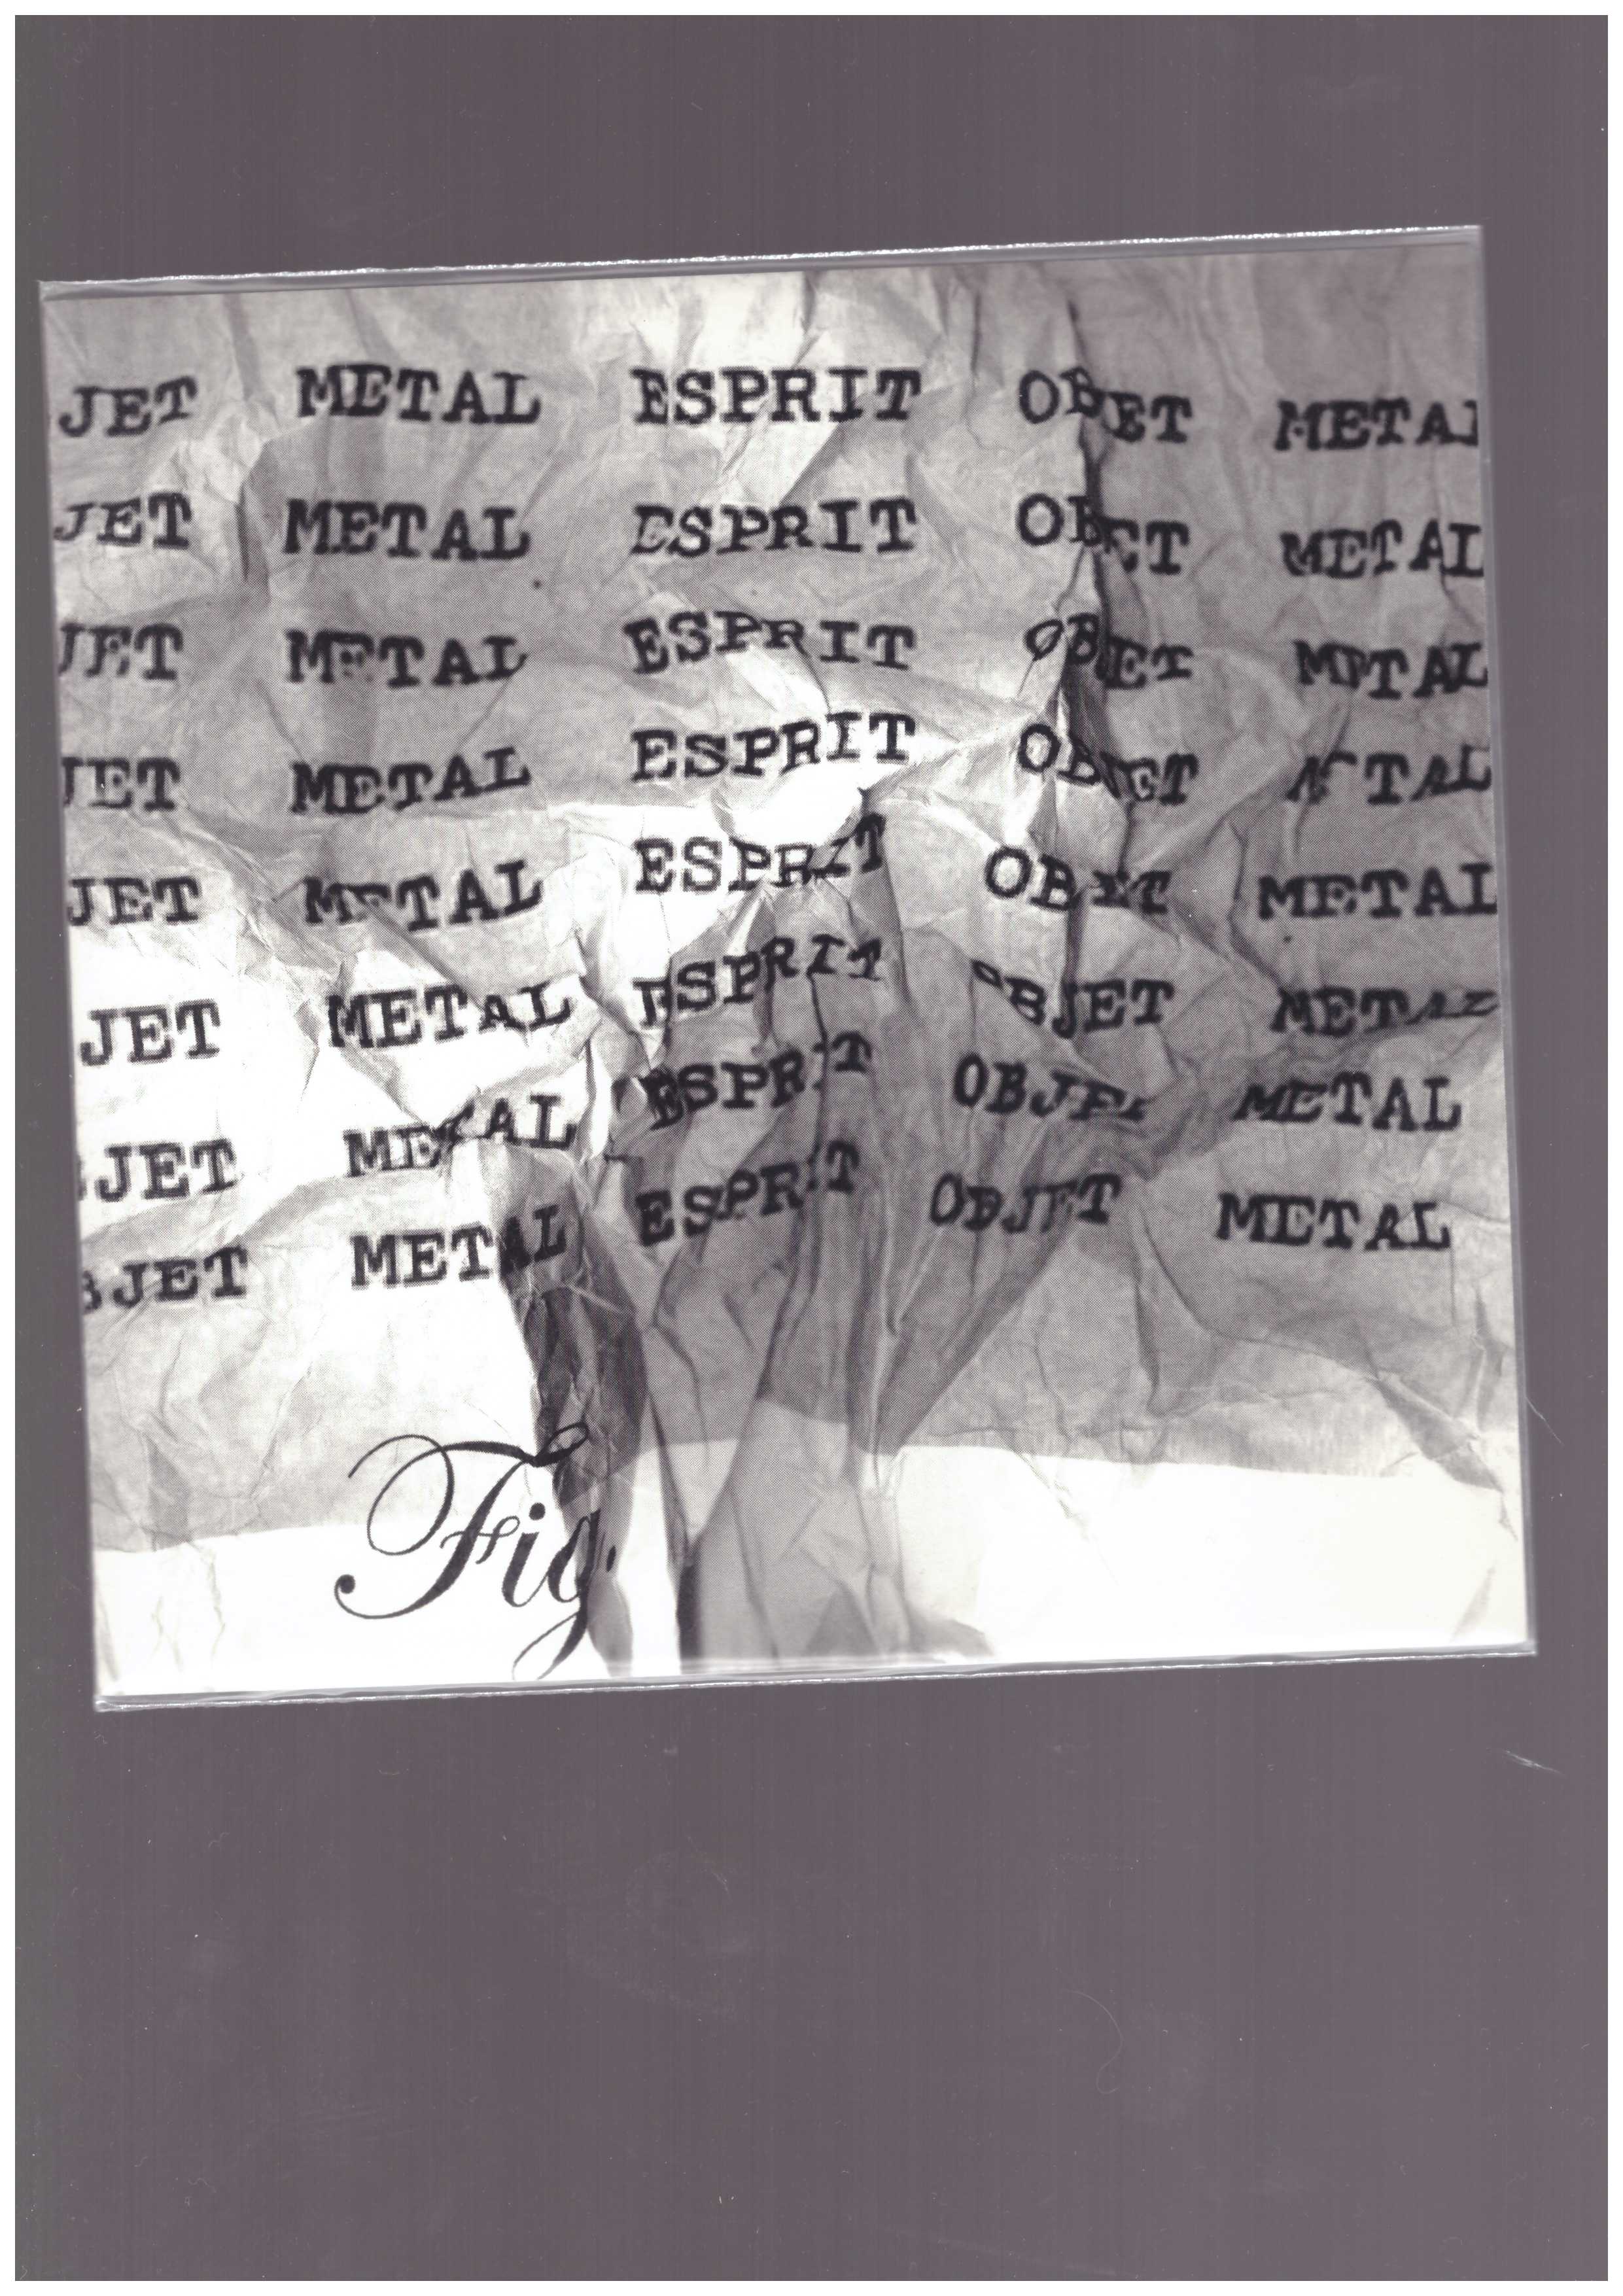 ANTOINE, Jean-Philippe; ELGGREN, Leif - Objet Metal Esprit